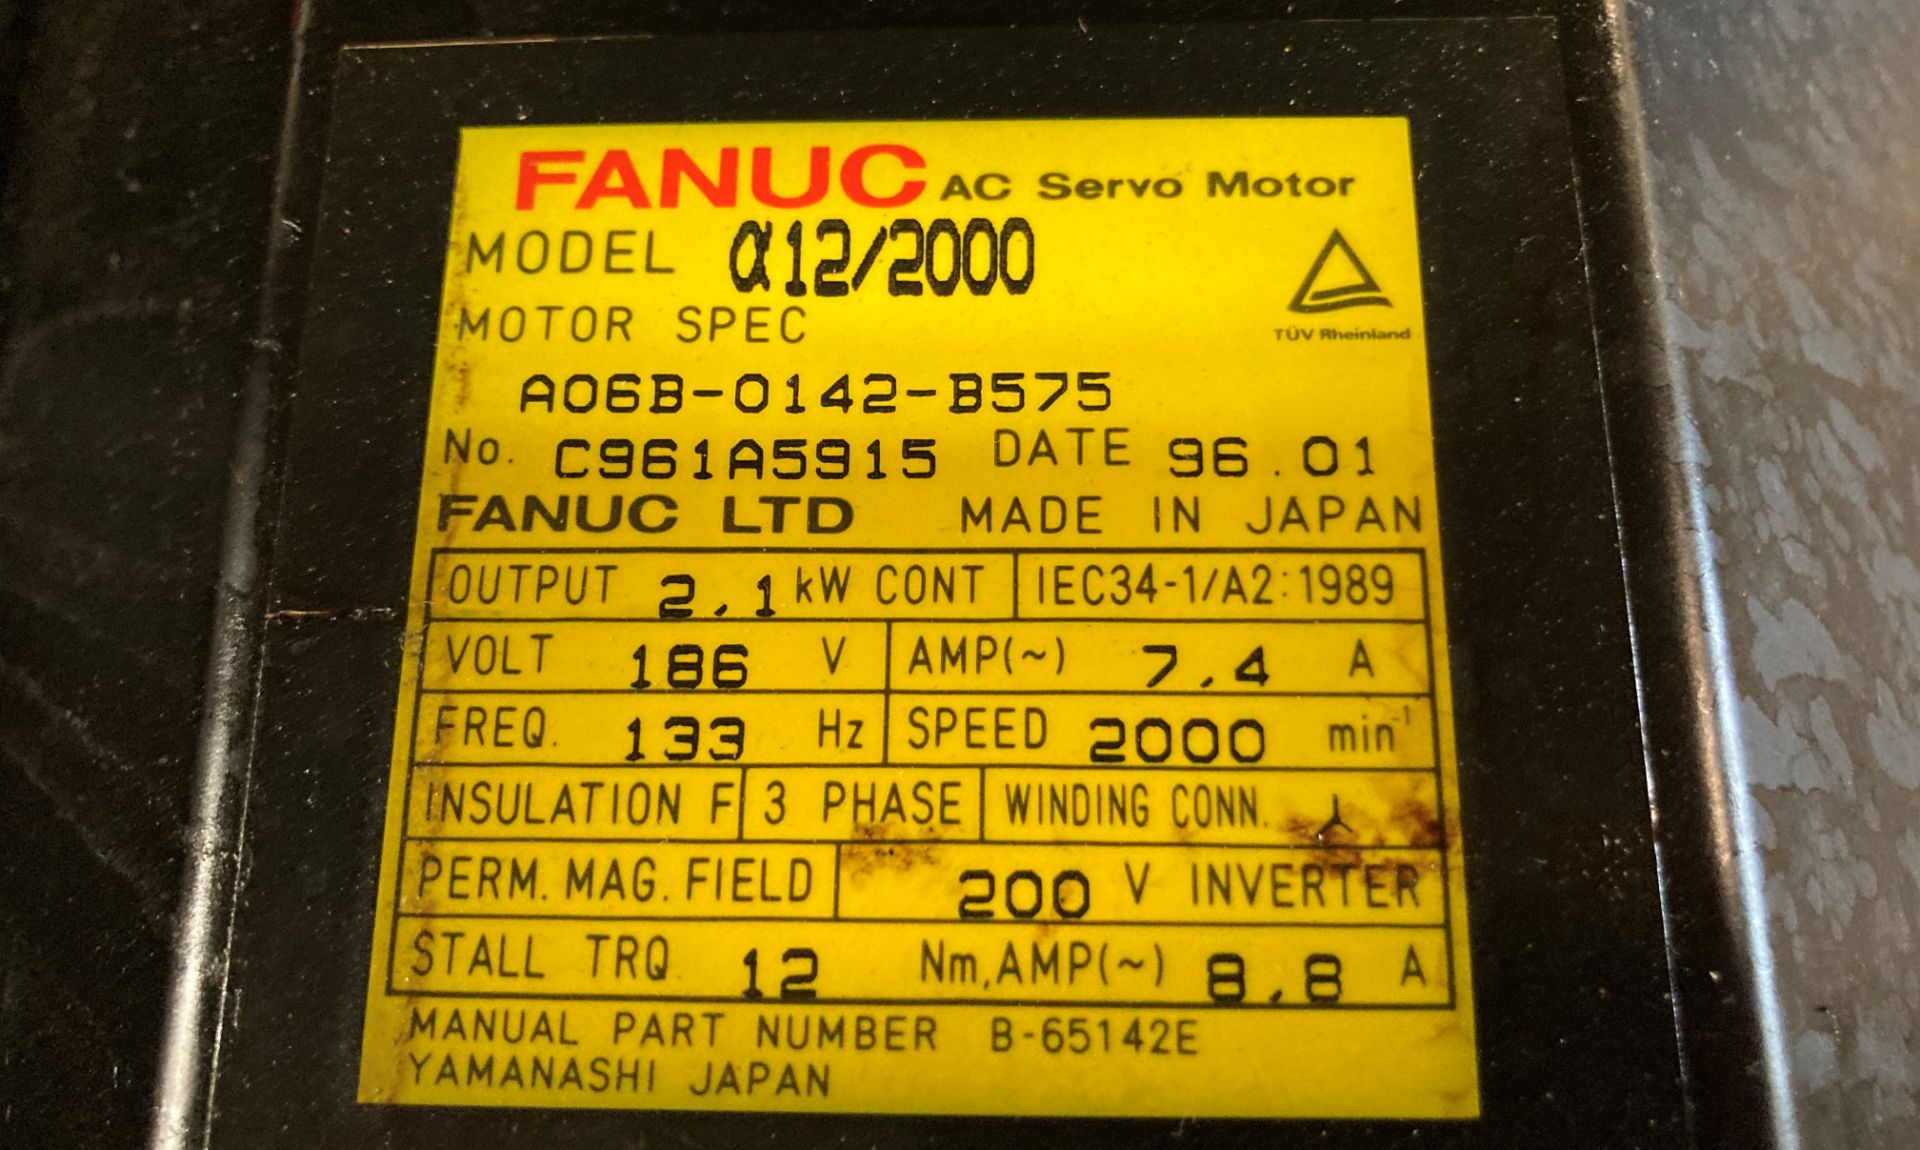 (2) Fanuc AC Servo Motors, M/N: a12/2000 - Image 5 of 5